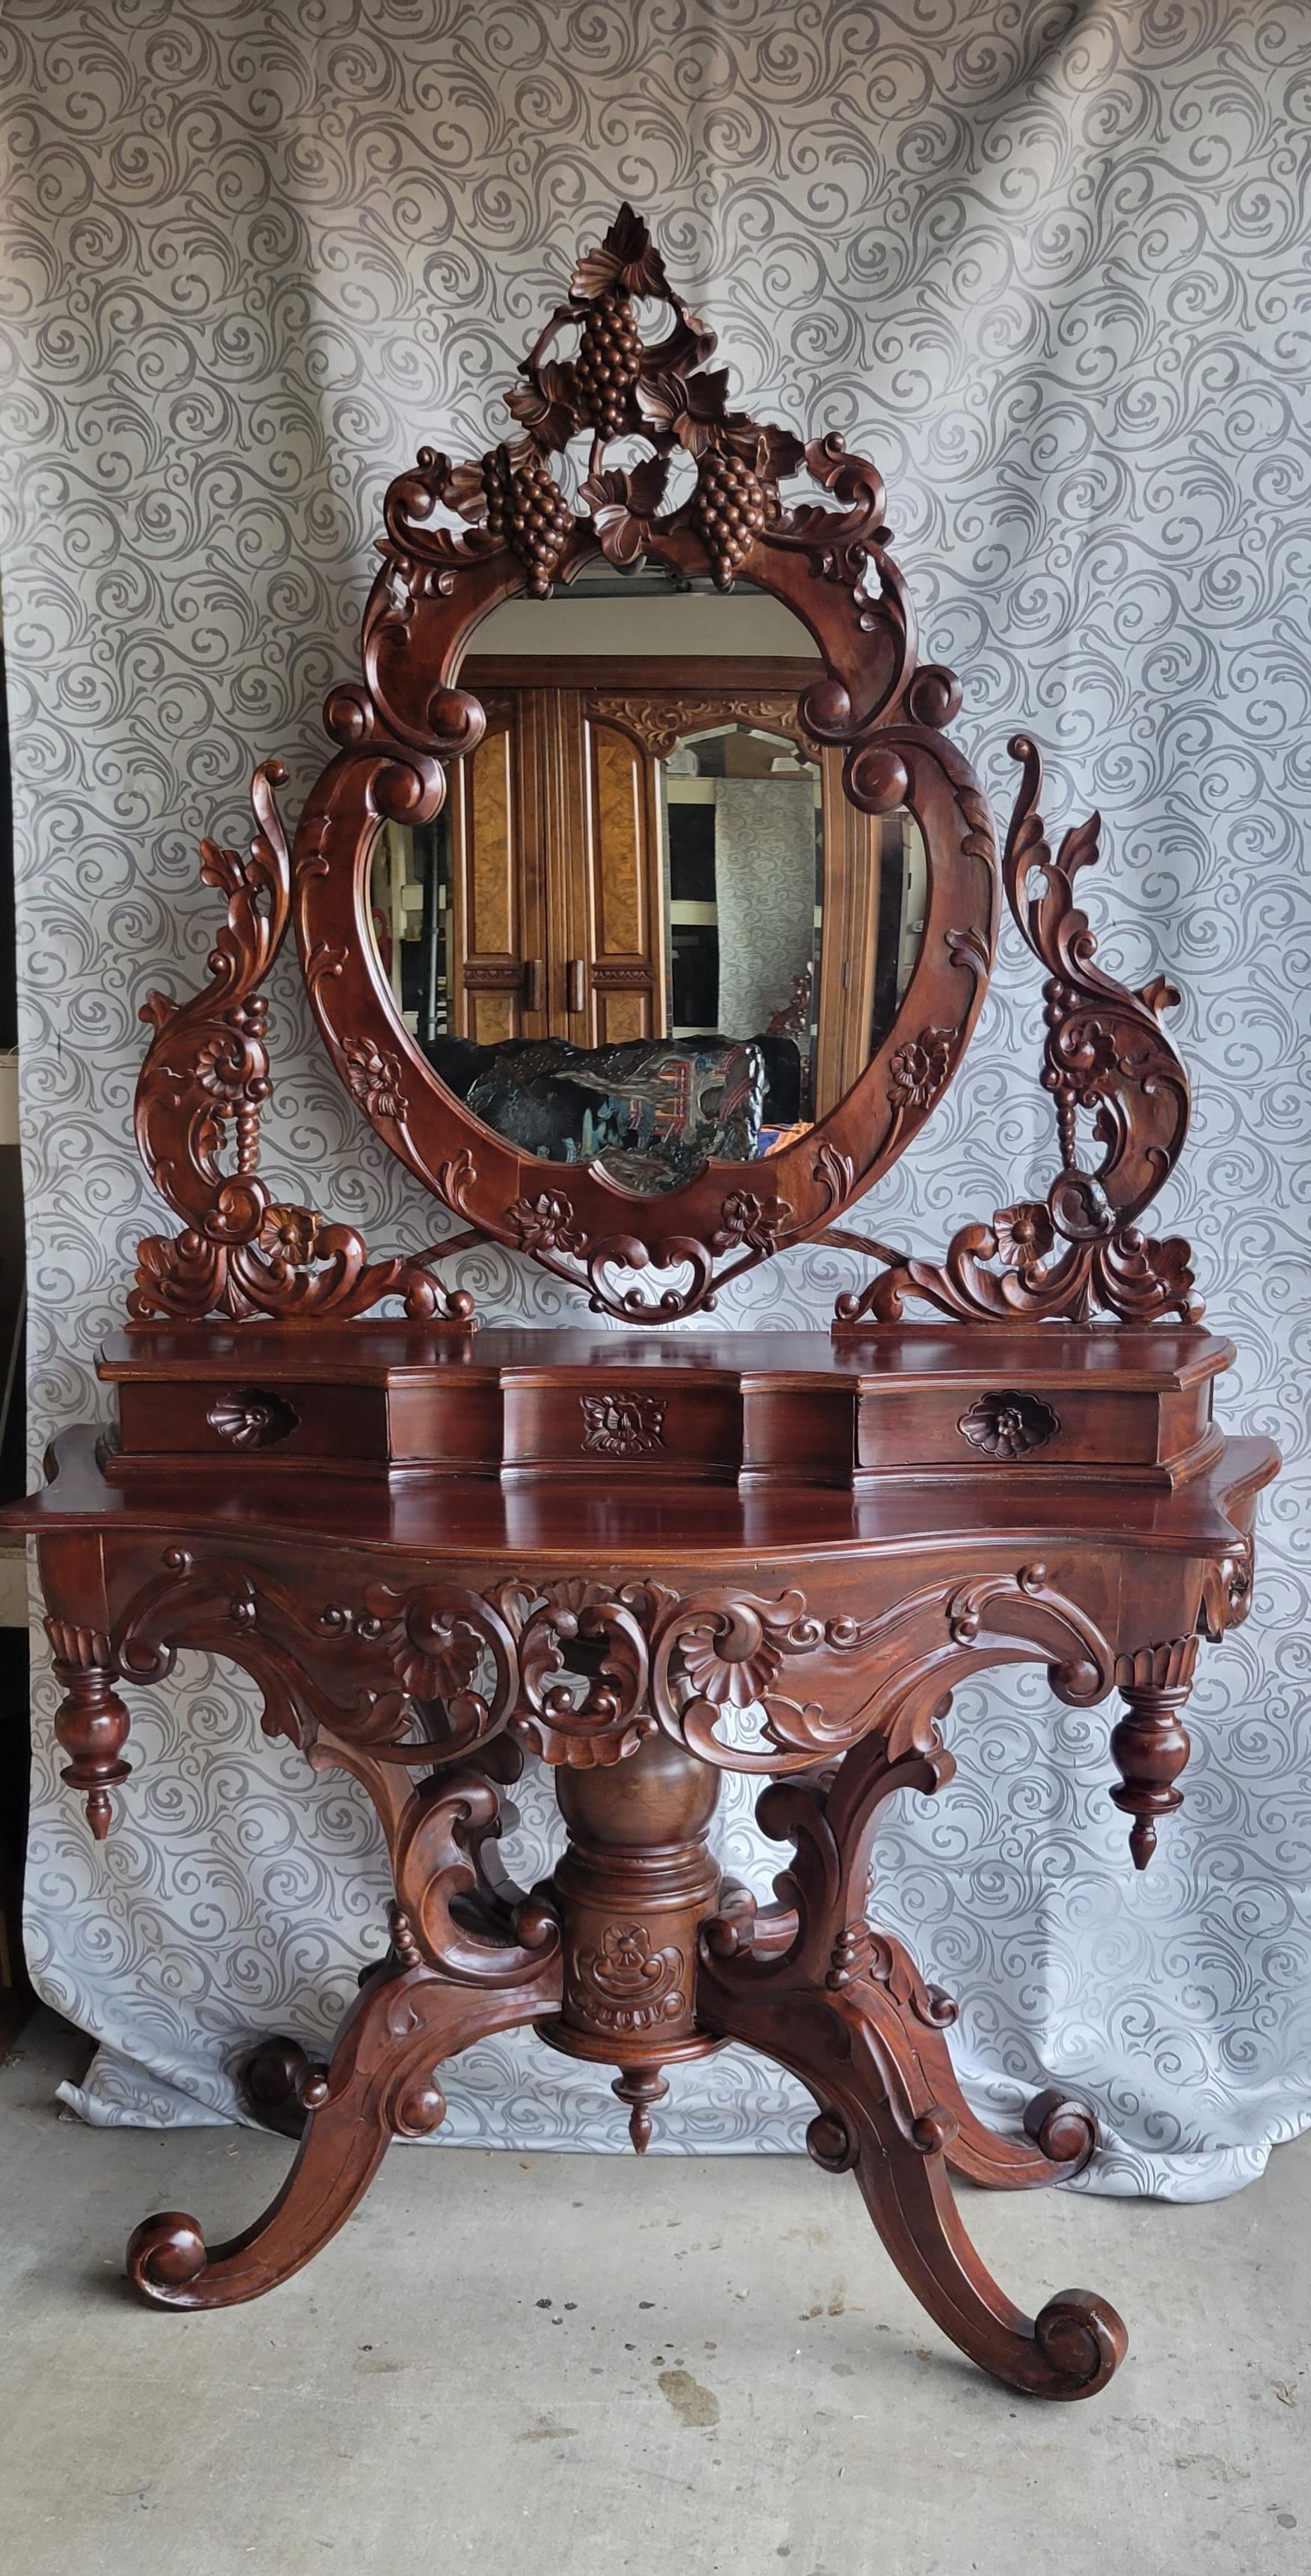 Vanité ancienne sculptée à la main avec deux tiroirs et un miroir ovale. Fabriqué en bois massif avec des sculptures complexes. La partie supérieure avec le miroir ne se sépare pas de la partie inférieure,  il est construit en une seule pièce.  Le